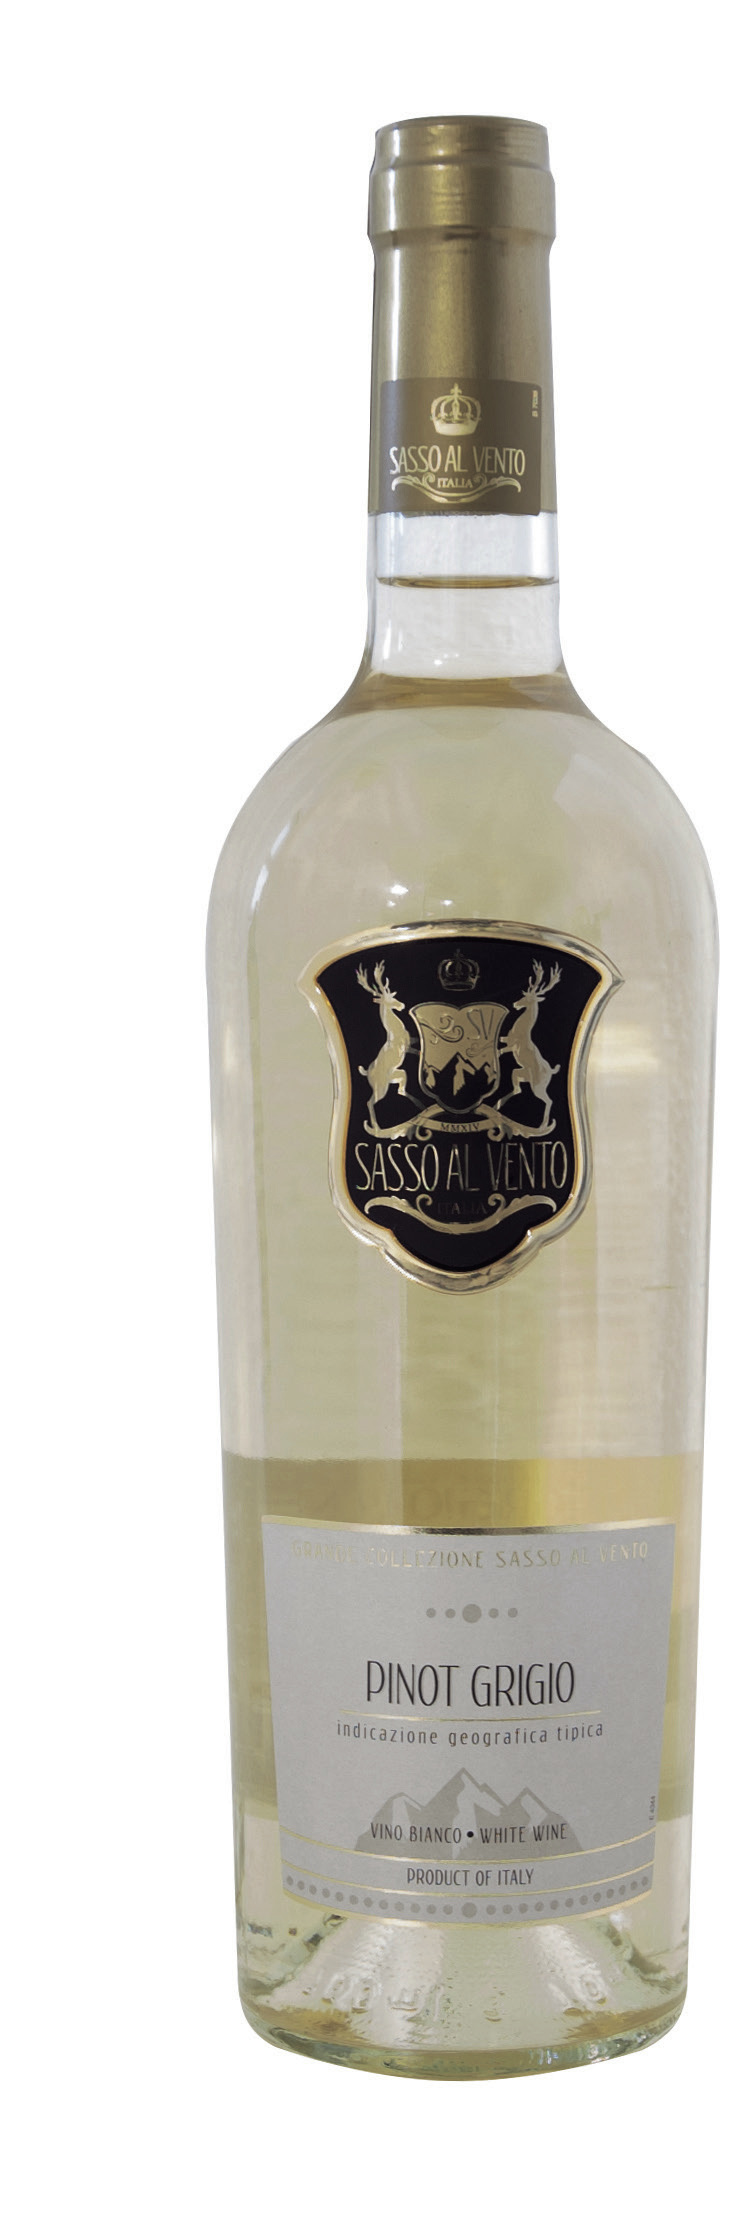 tyktflydende Sequel hvede Veneto Pinot Grigio “Sasso al Vento” igt 2014